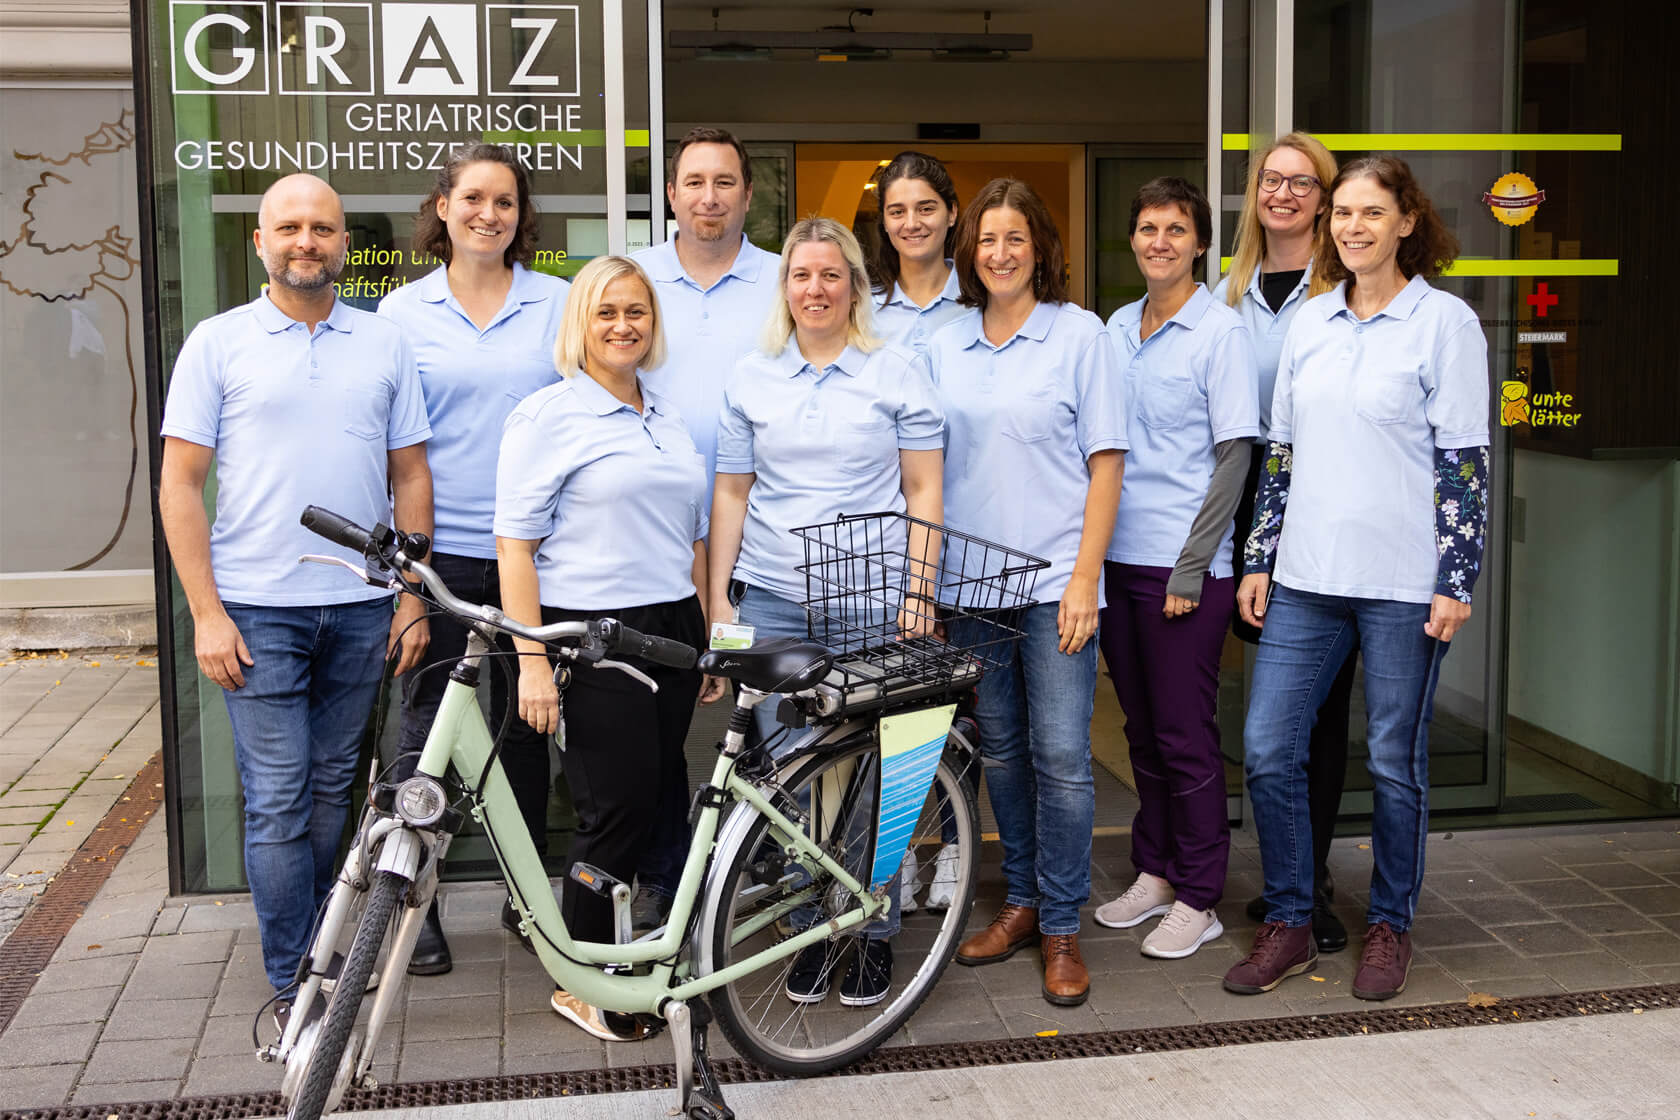 Gruppenfoto des Teams der mobilen Remobilisation vor dem Eingangsbereich der Geriatrischen Gesundheitszentren mit blauen T-Shirts und e-Bike im Vordergrund